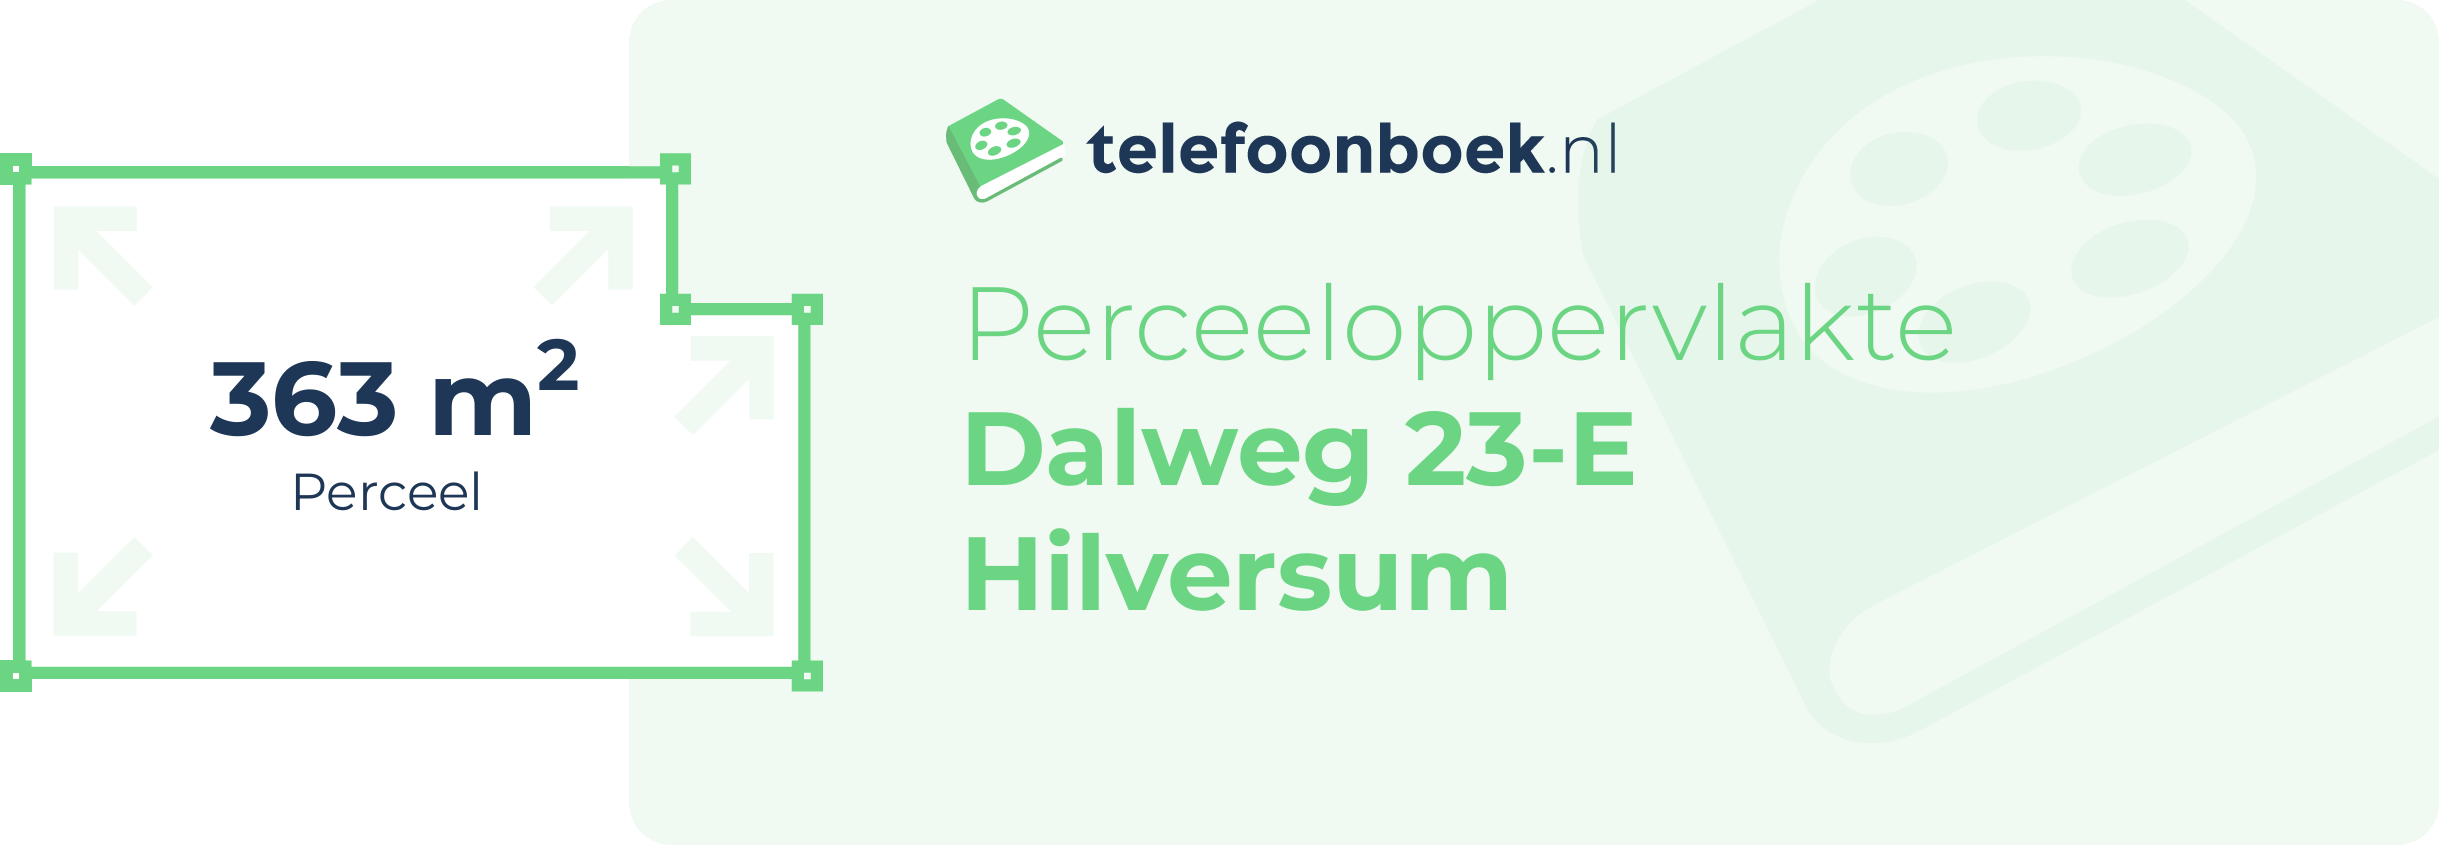 Perceeloppervlakte Dalweg 23-E Hilversum